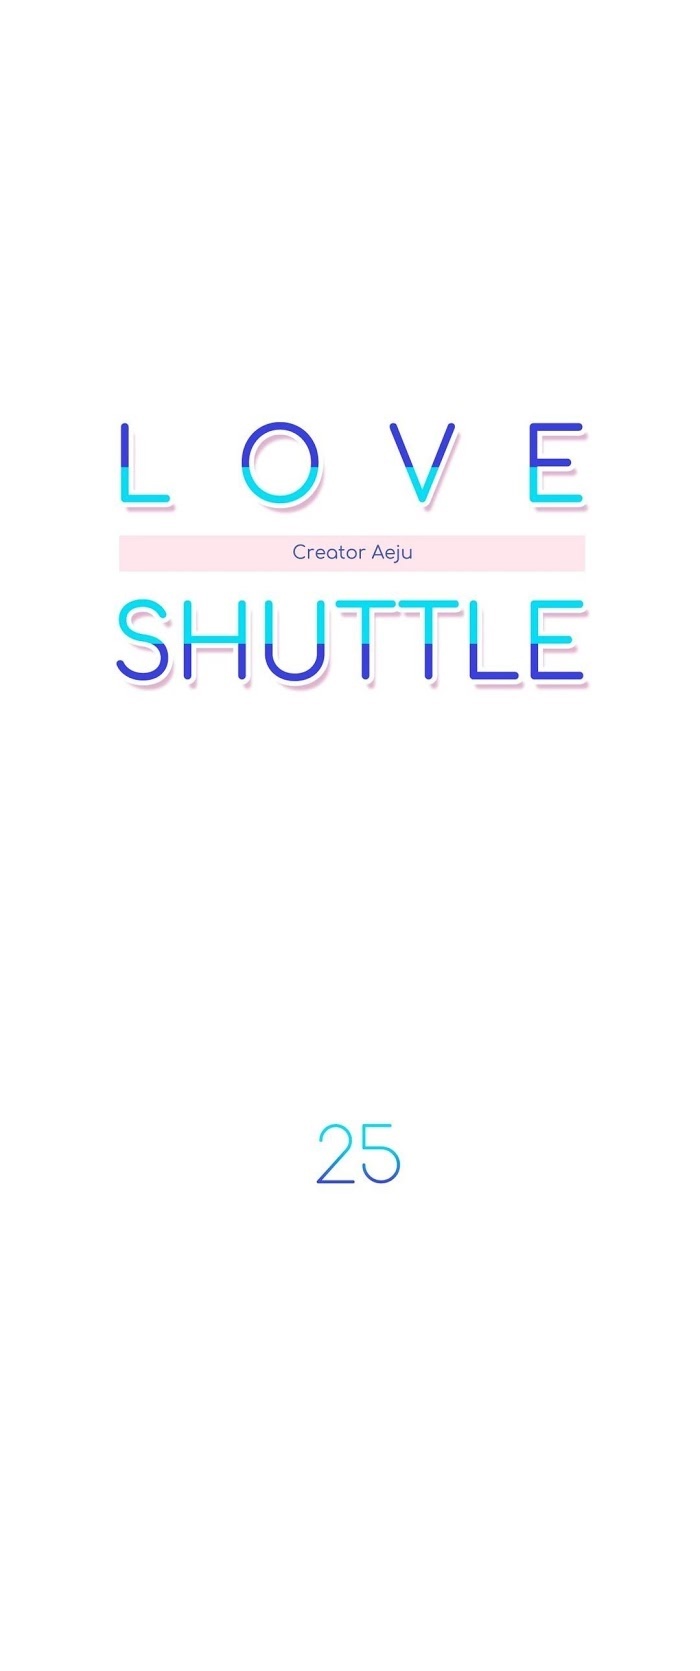 love shuttle